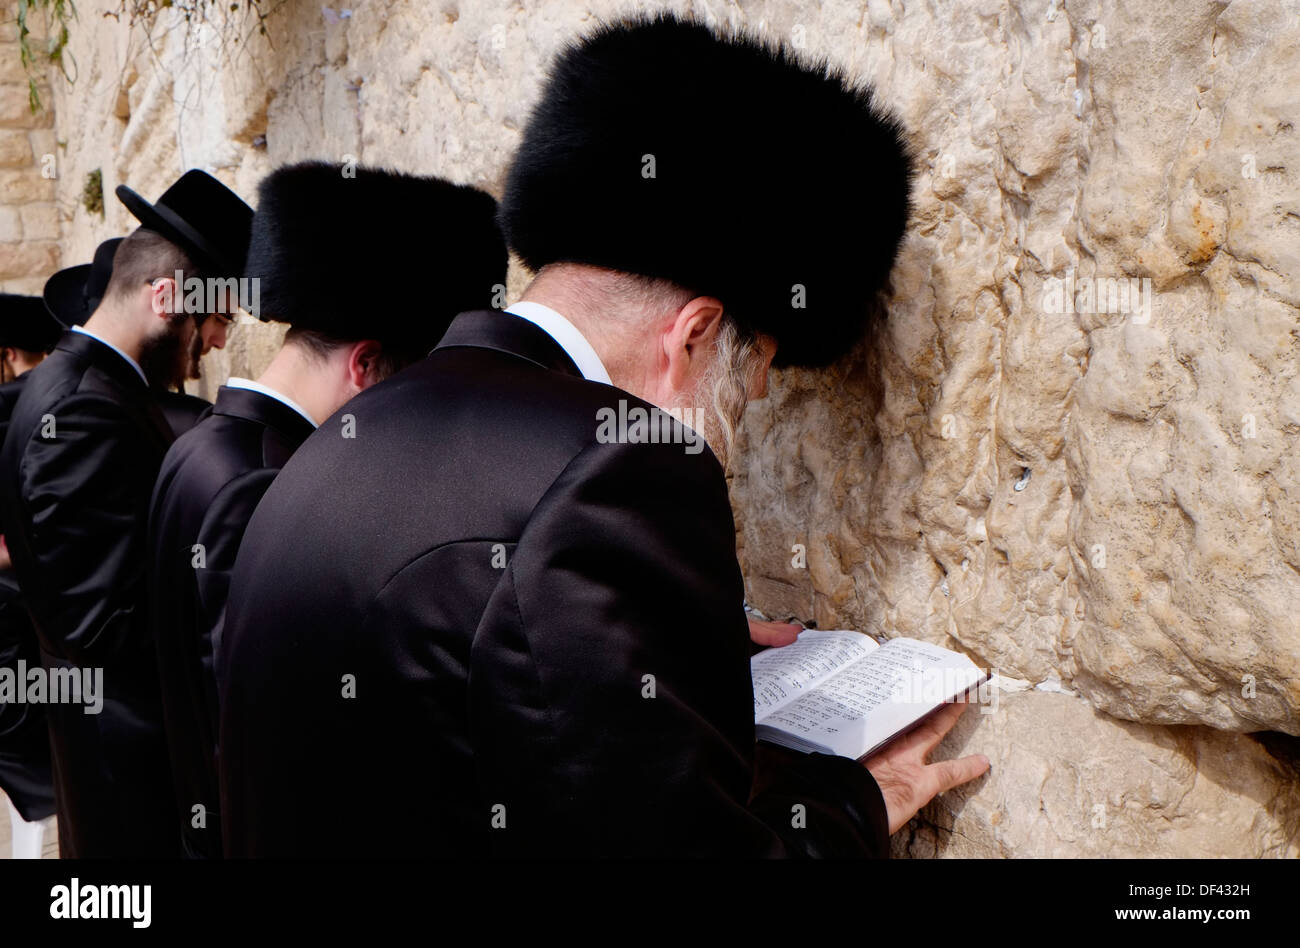 Les Juifs hassidiques portant un chapeau de fourrure shtreimel portés par  de nombreux hommes mariés communauté juive, le chabbat et les fêtes juives  priant au Mur Occidental ou Kotel aussi Mur des